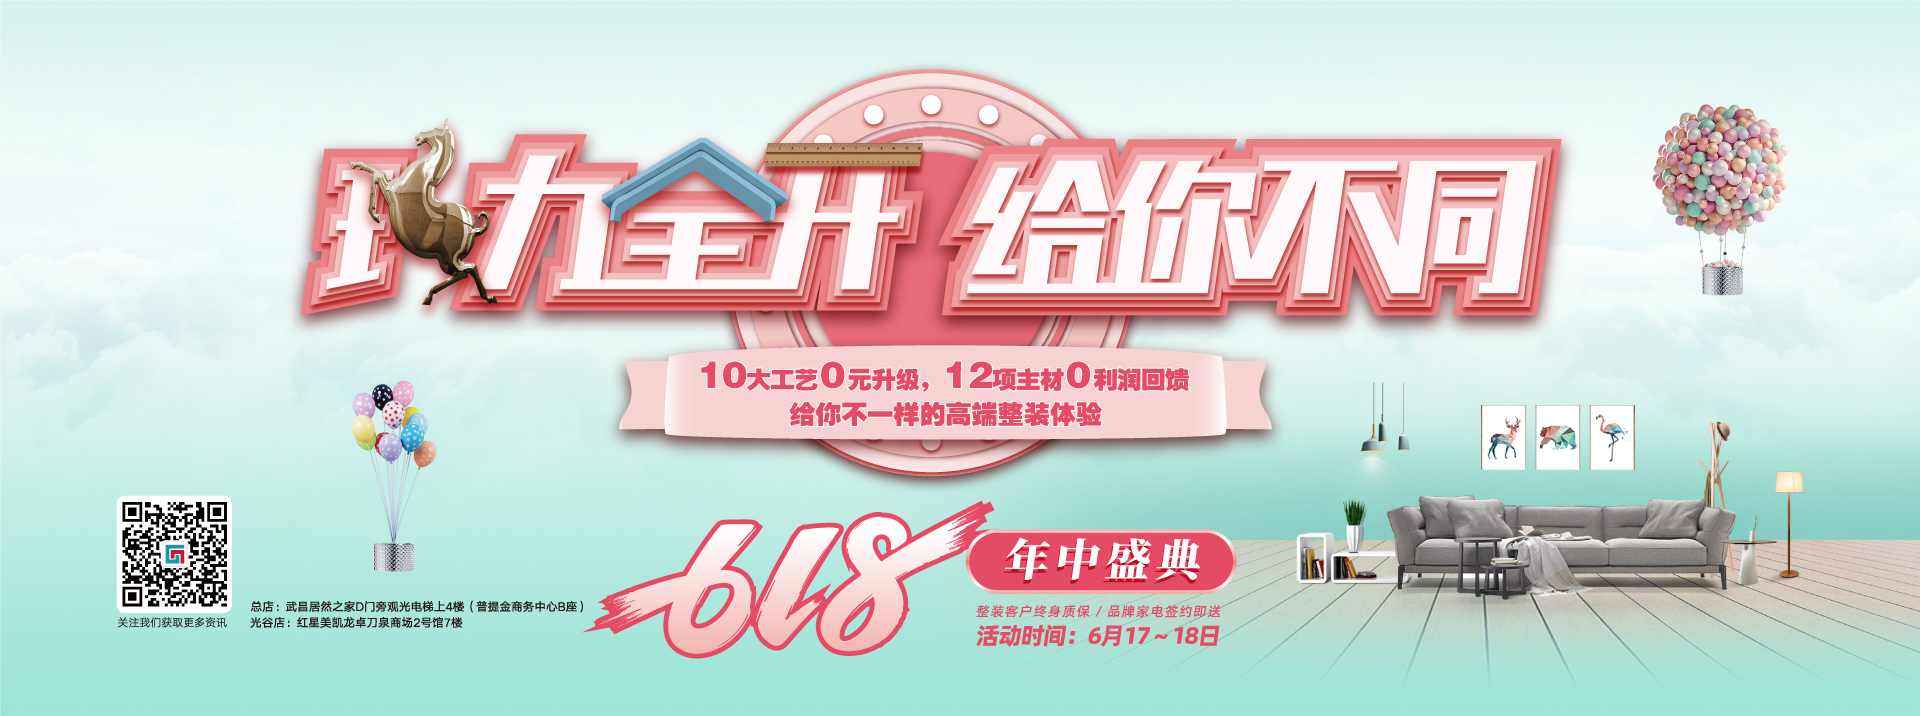 中国试操逼性生活视频免费看六西格玛装饰活动海报